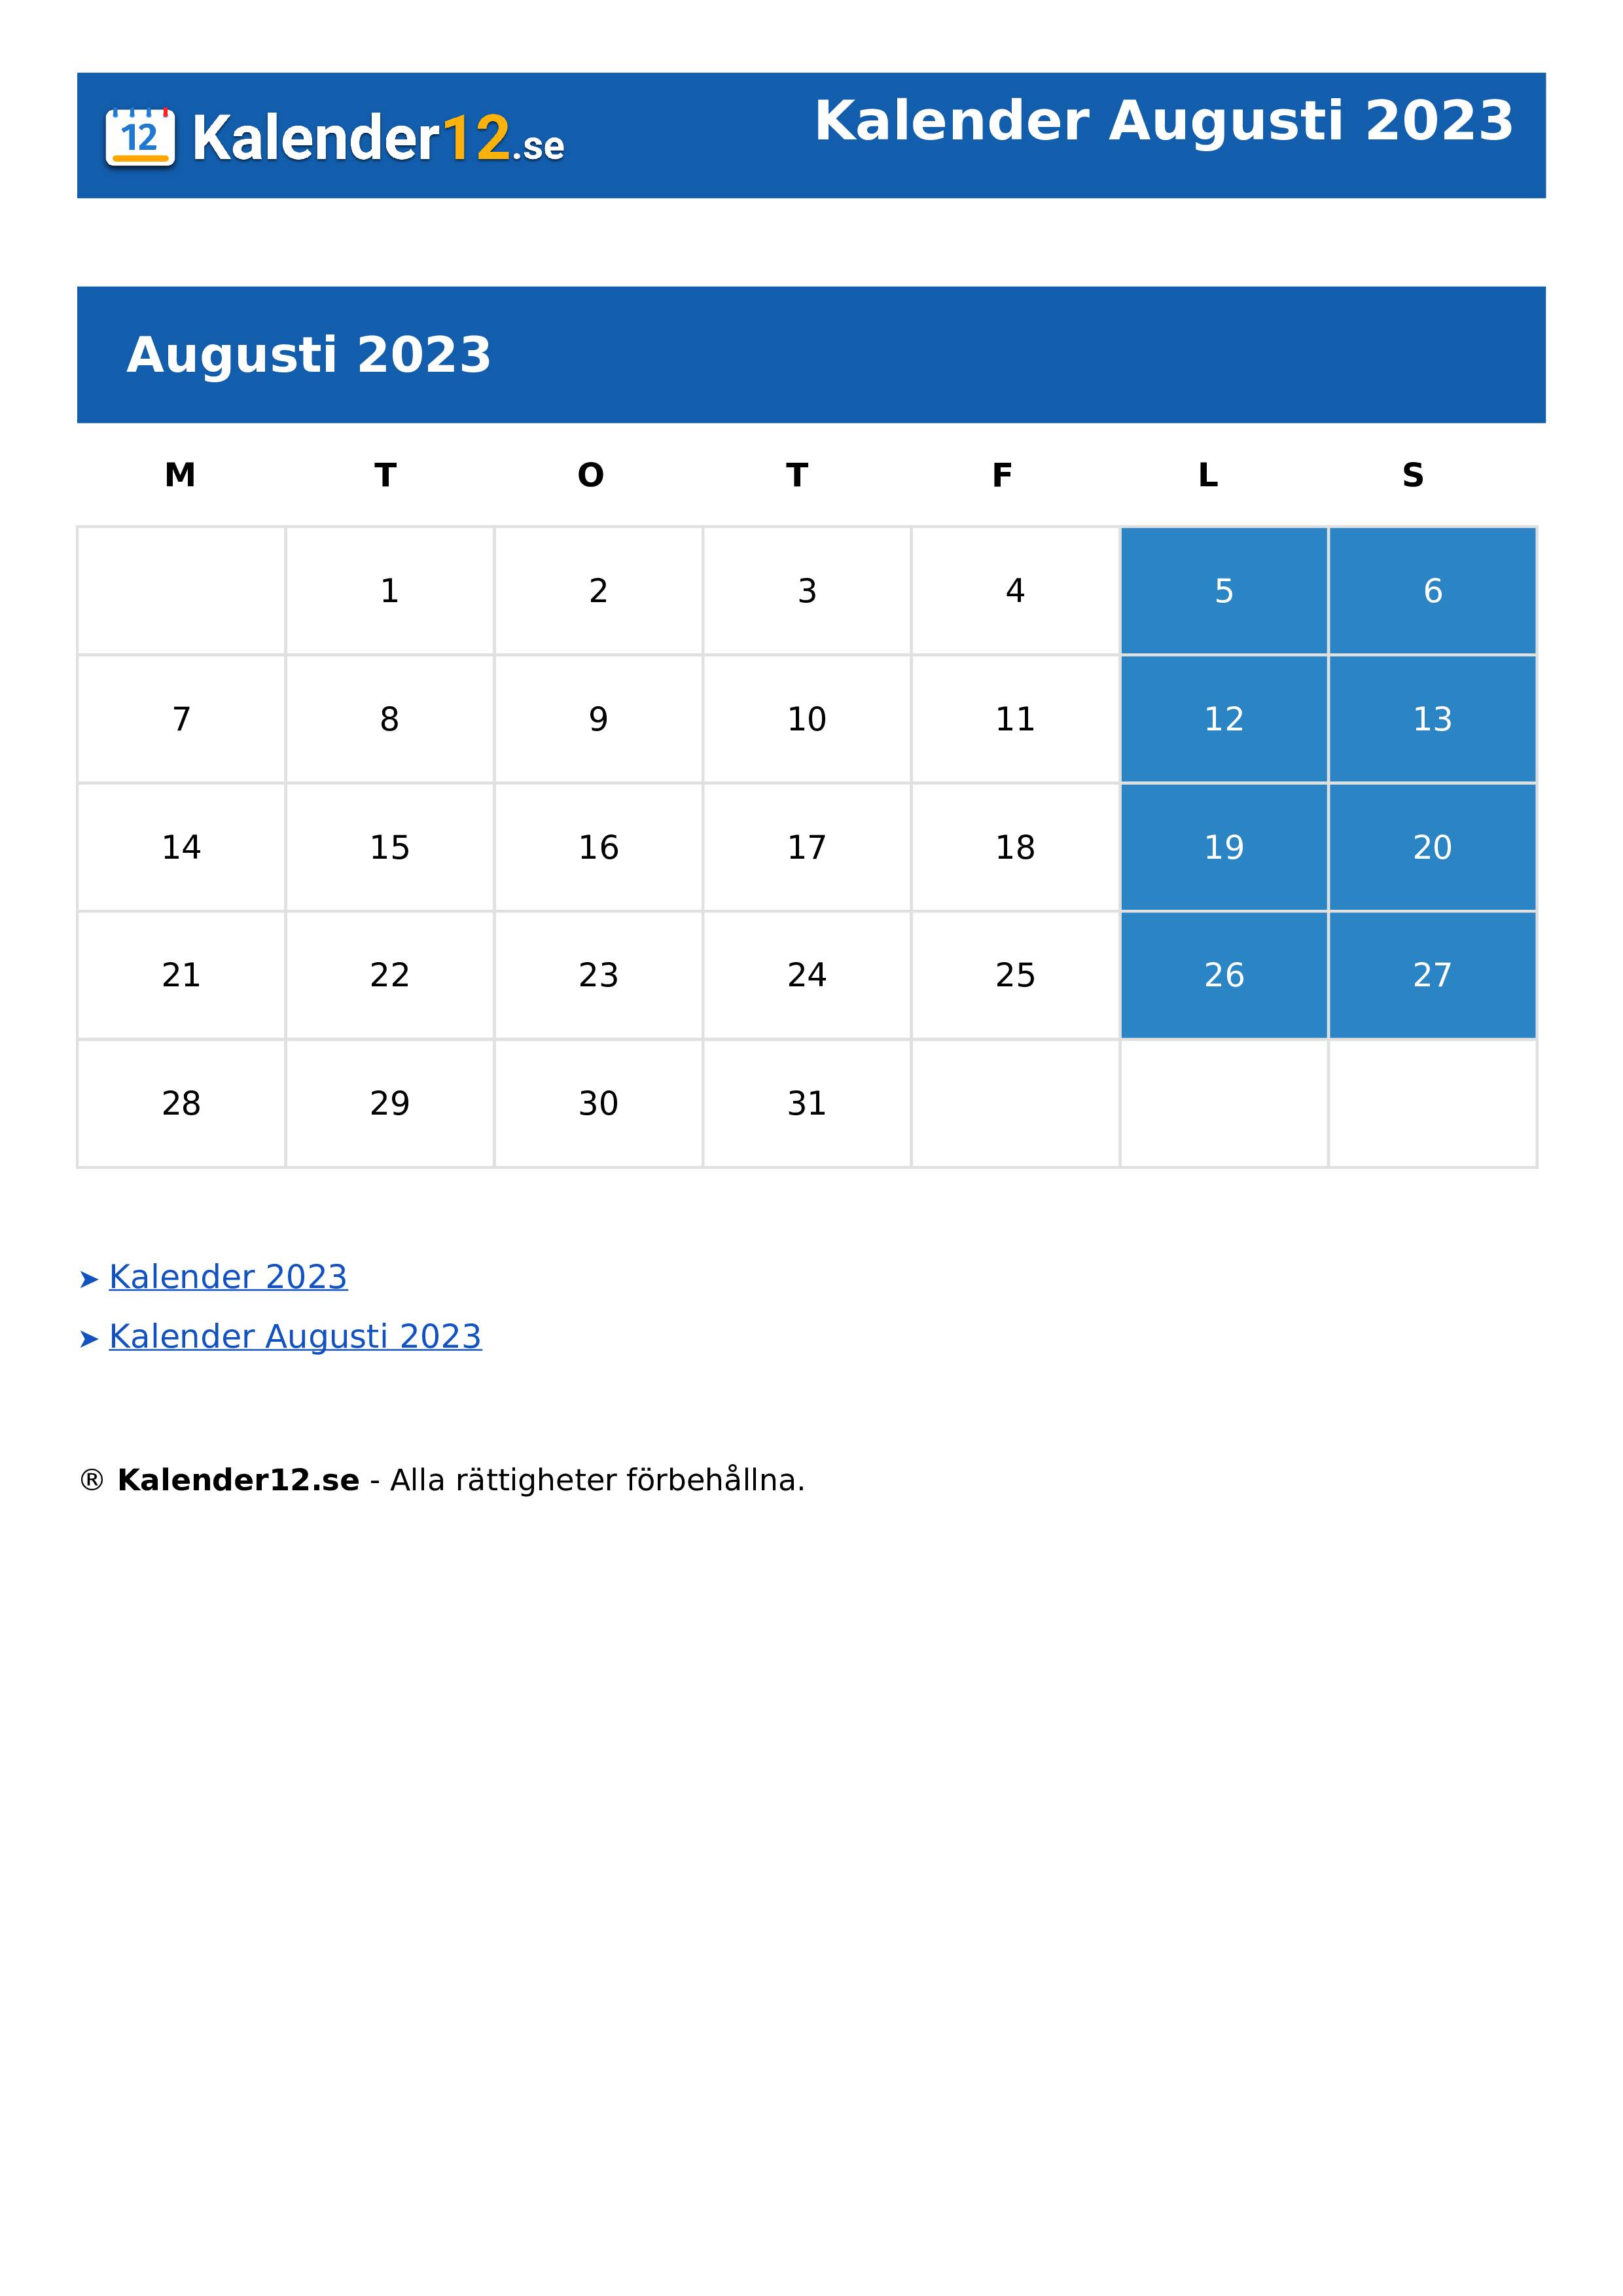 Calendar Augusti 2023